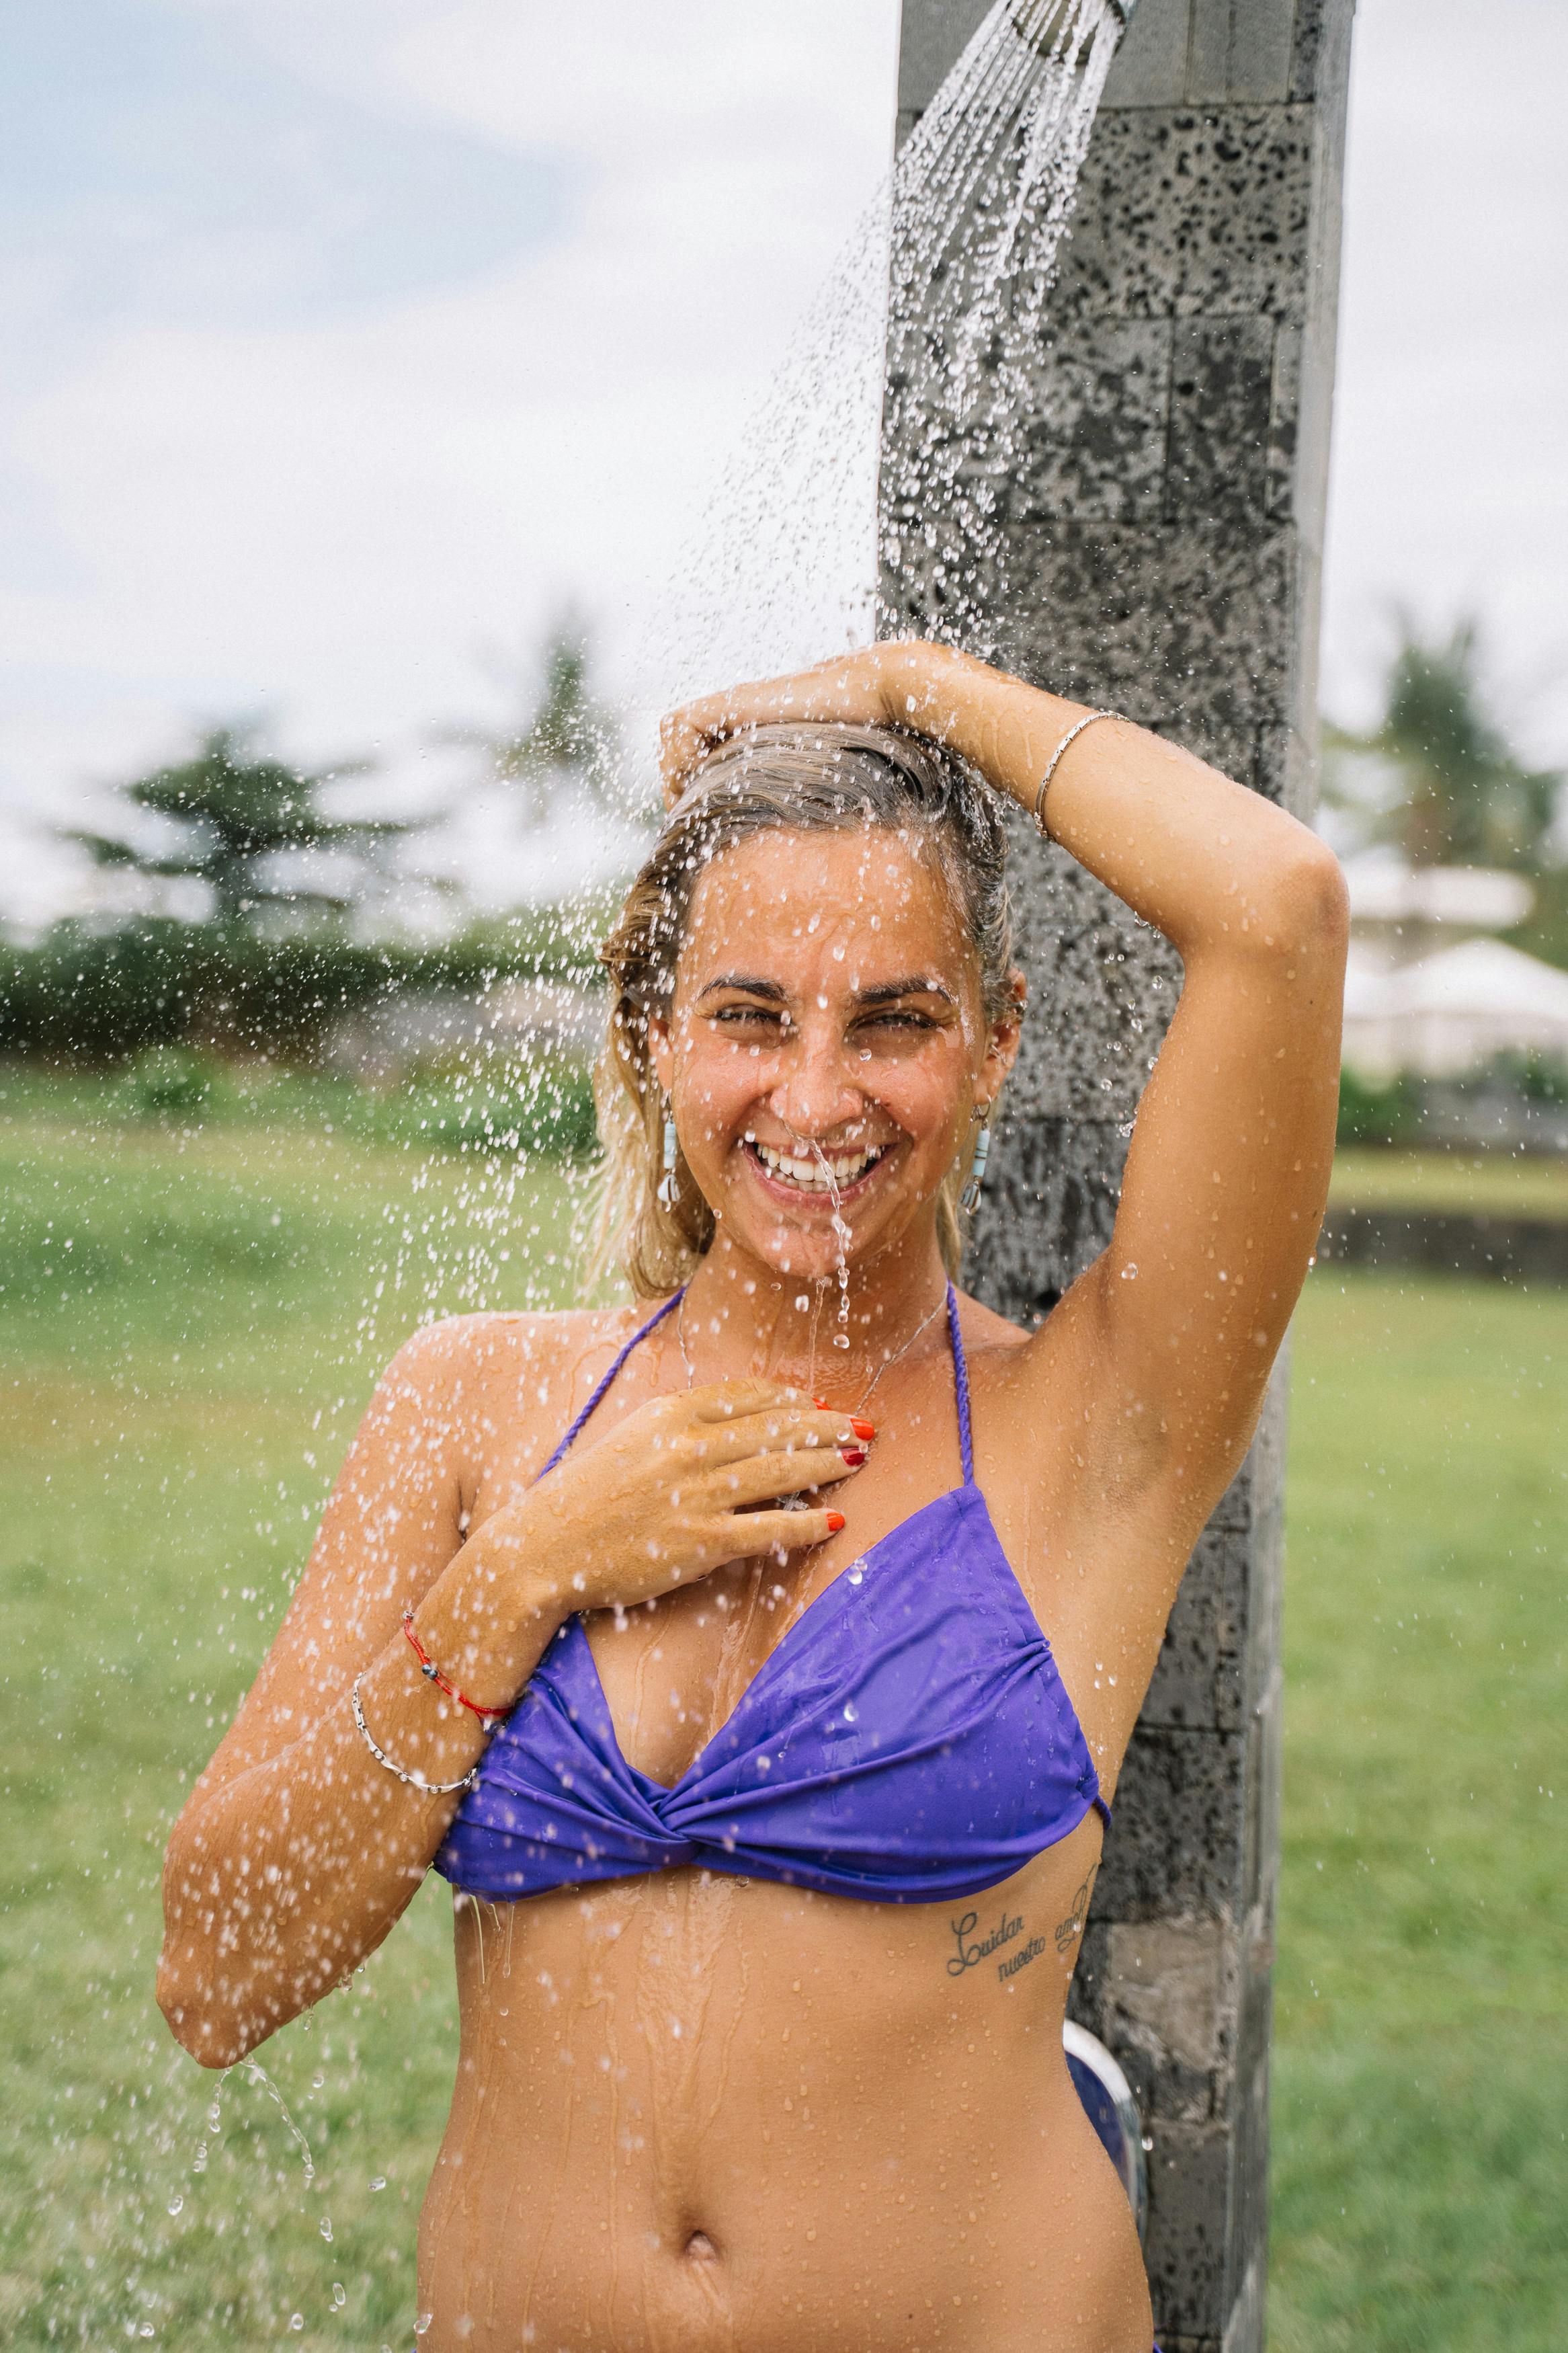 A Woman in a Bikini Showering · Free Stock Photo